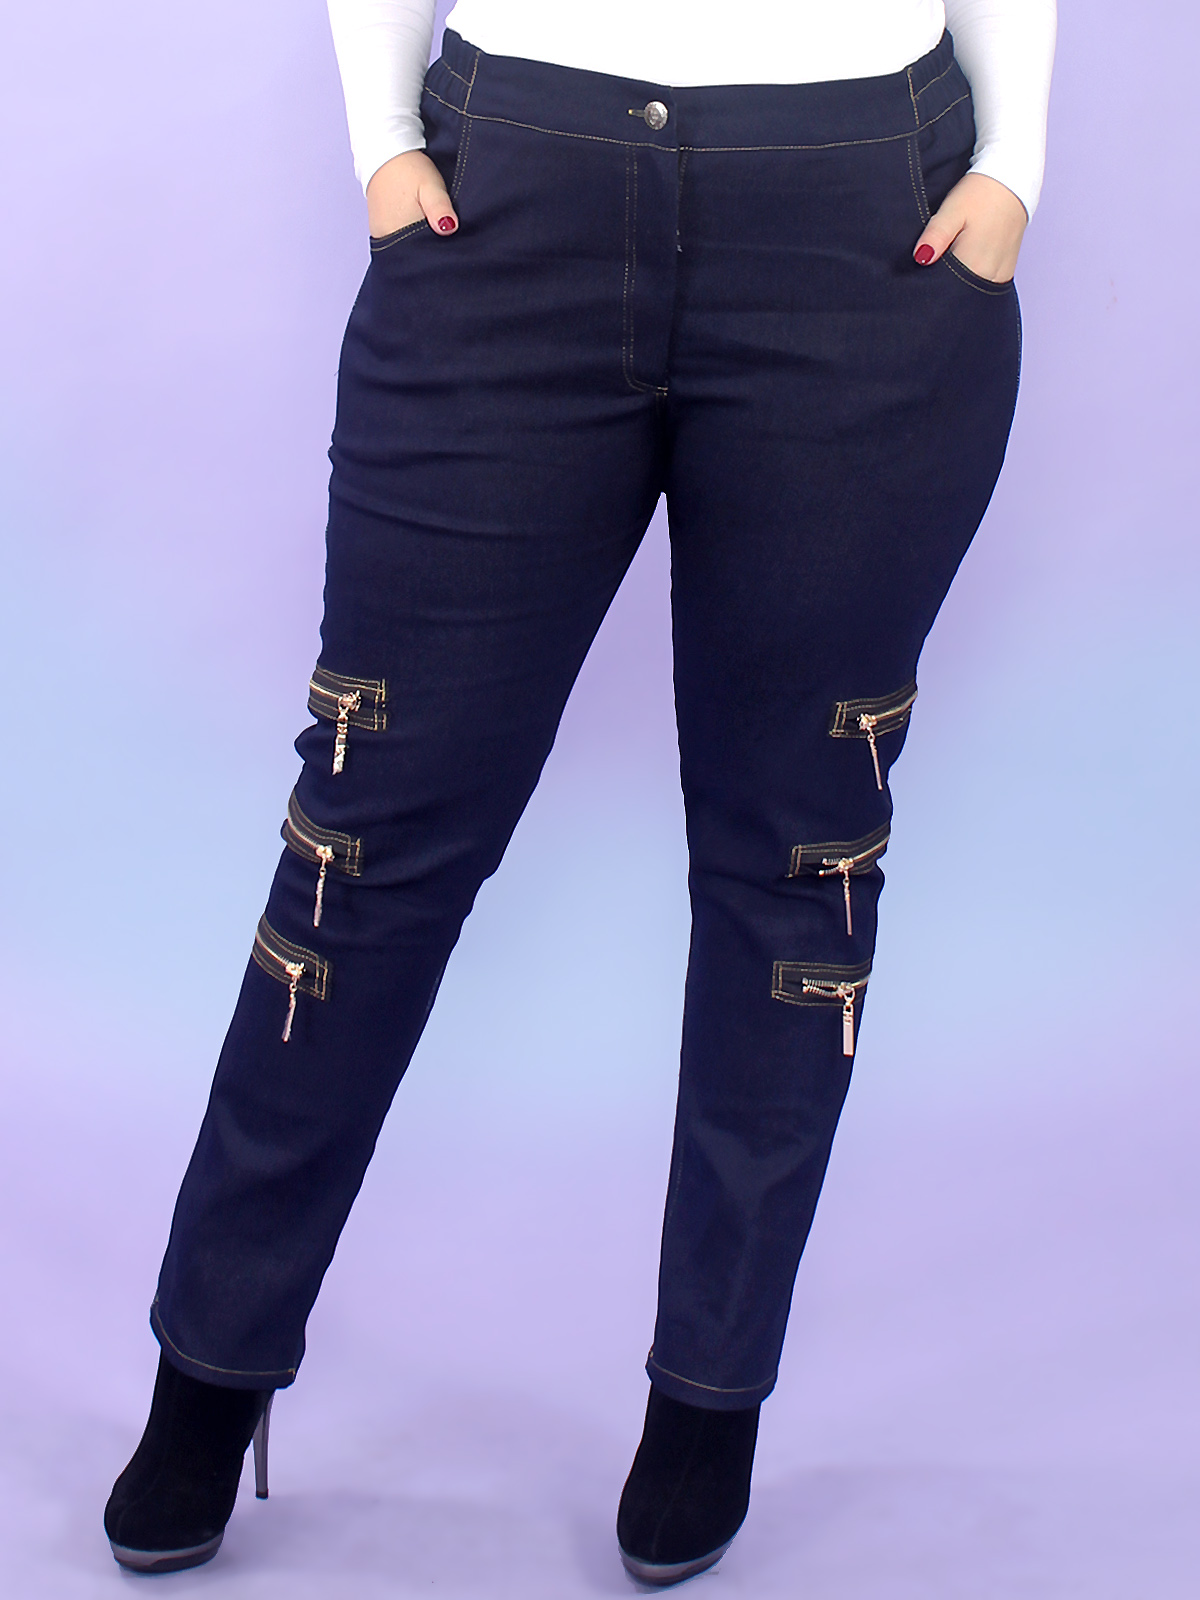 Зауженные джинсы-стрейч с декоративными молниями, синие